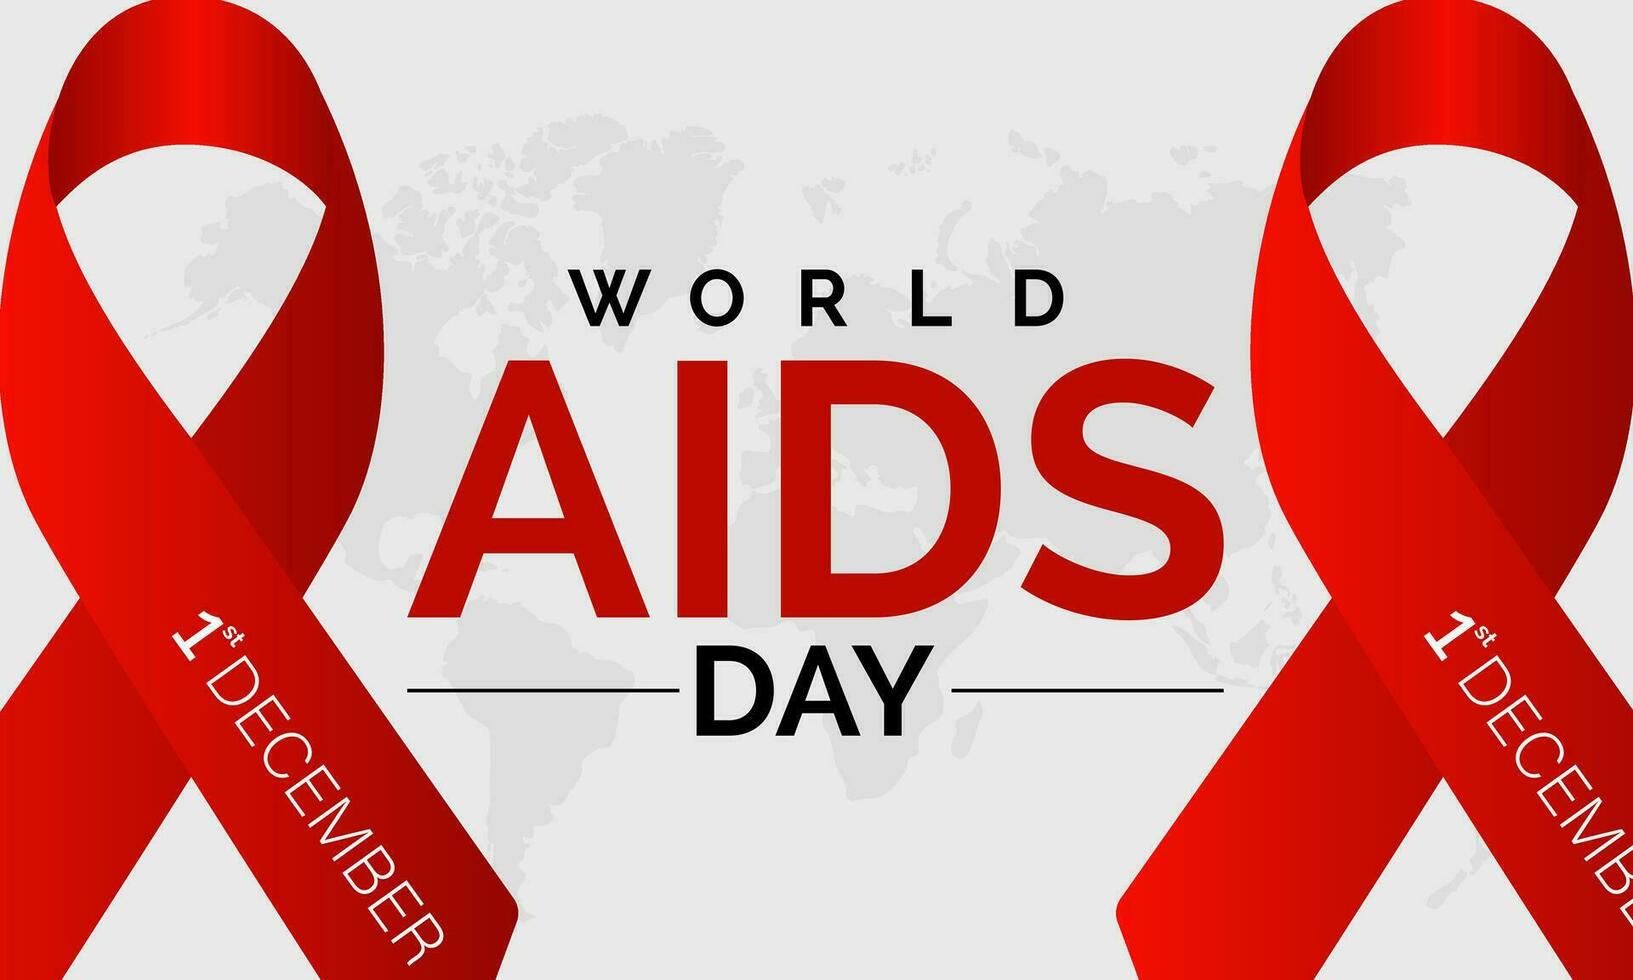 mundo SIDA día conciencia antecedentes rojo bandera cinta y global apoyo vector ilustración. fondo, bandera, tarjeta, póster diseño.